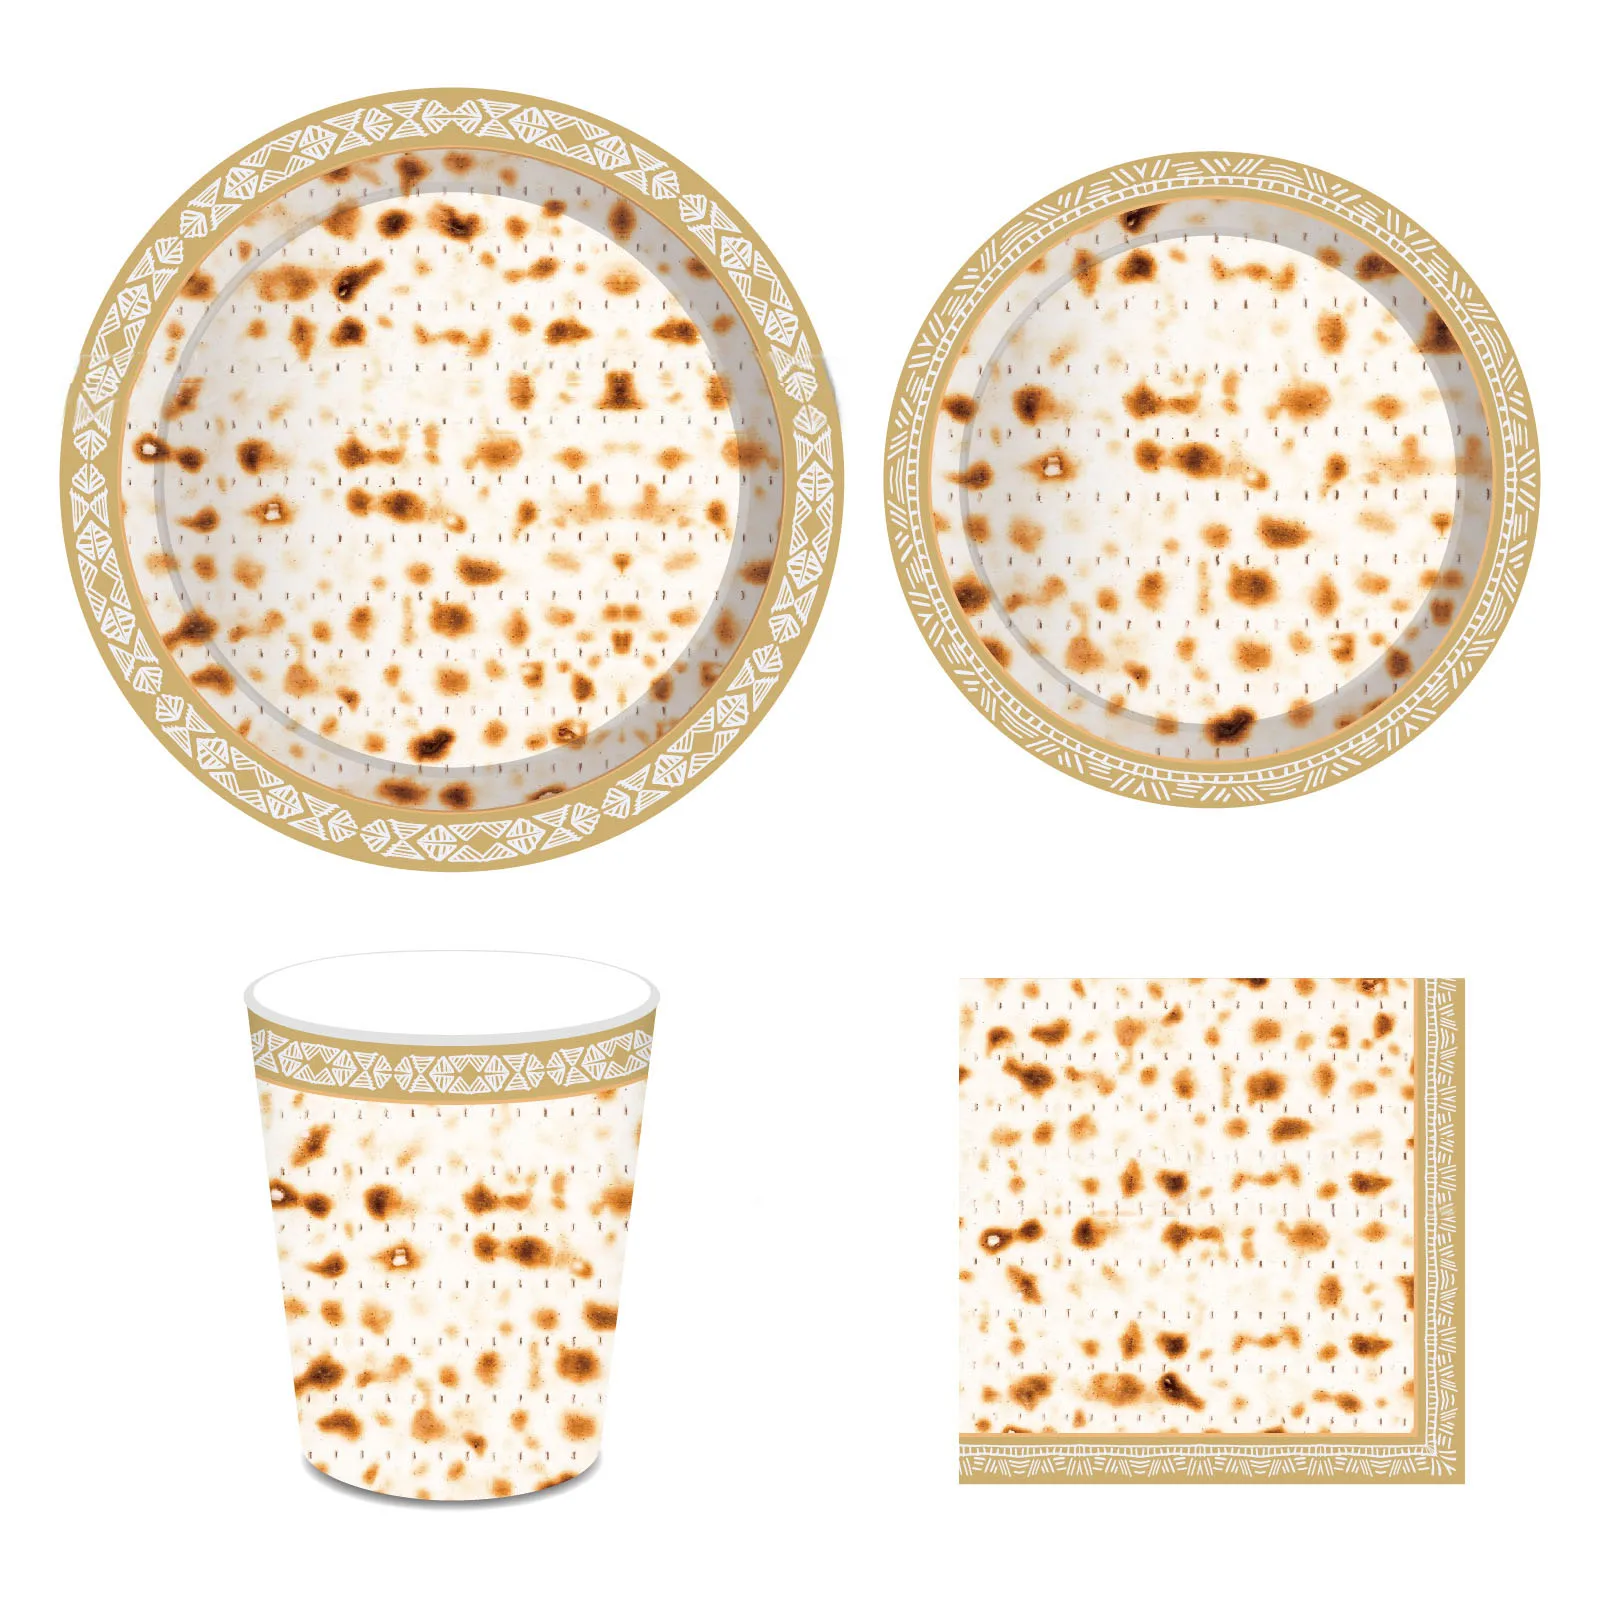 

Бумажная тарелка JOLLYBOOM с тематикой Пасхи, ложка, столовая посуда, товары для украшения еврейских праздников и вечеринок